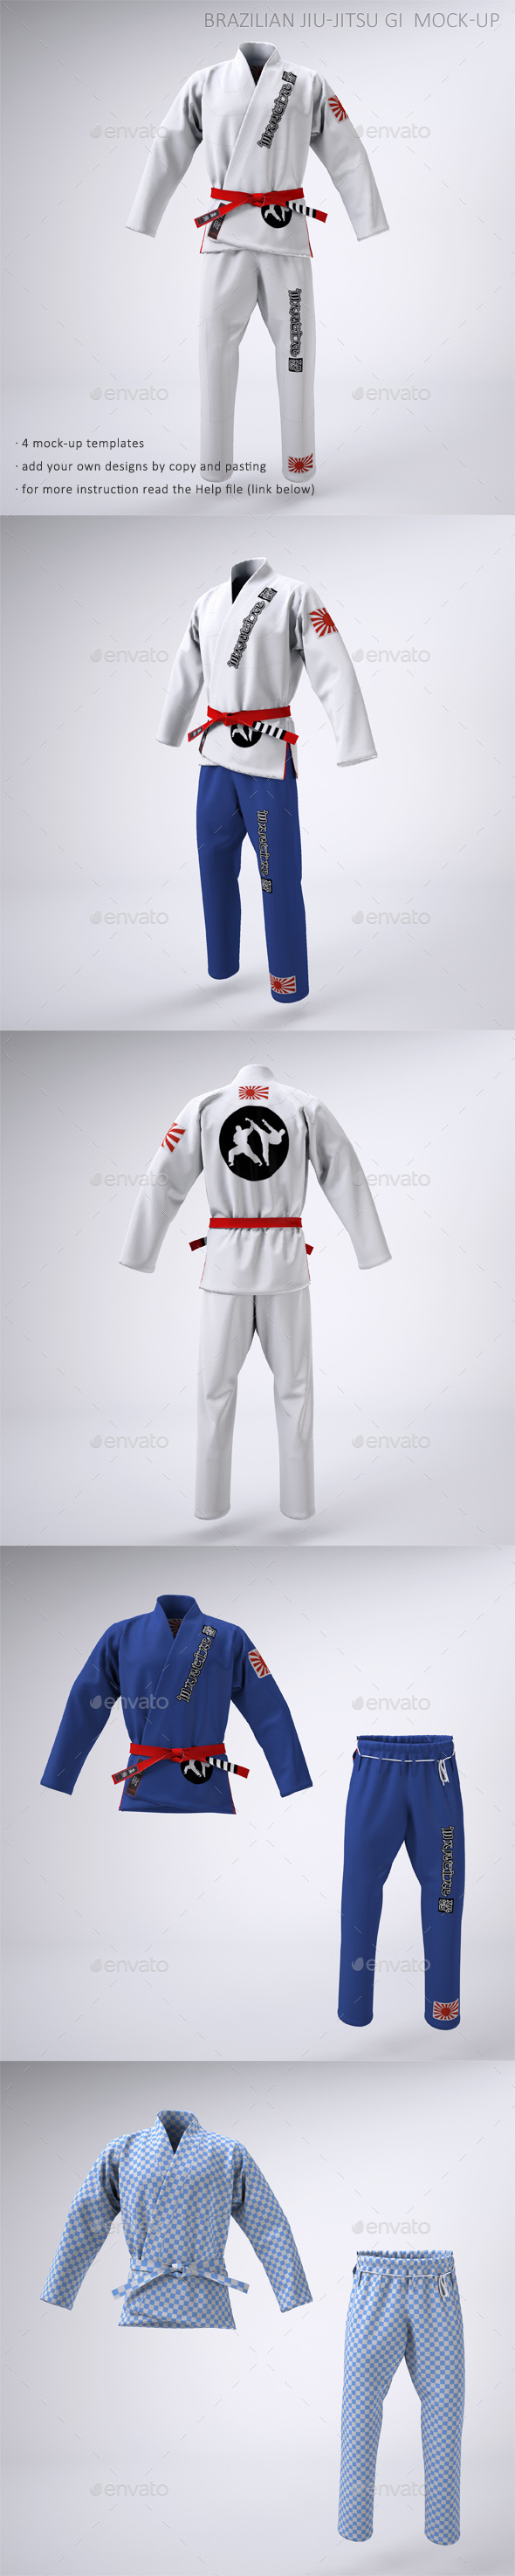 Download Brazilian Jiu-Jitsu Gi or Martial Arts Uniform Mock-up by Sanchi477